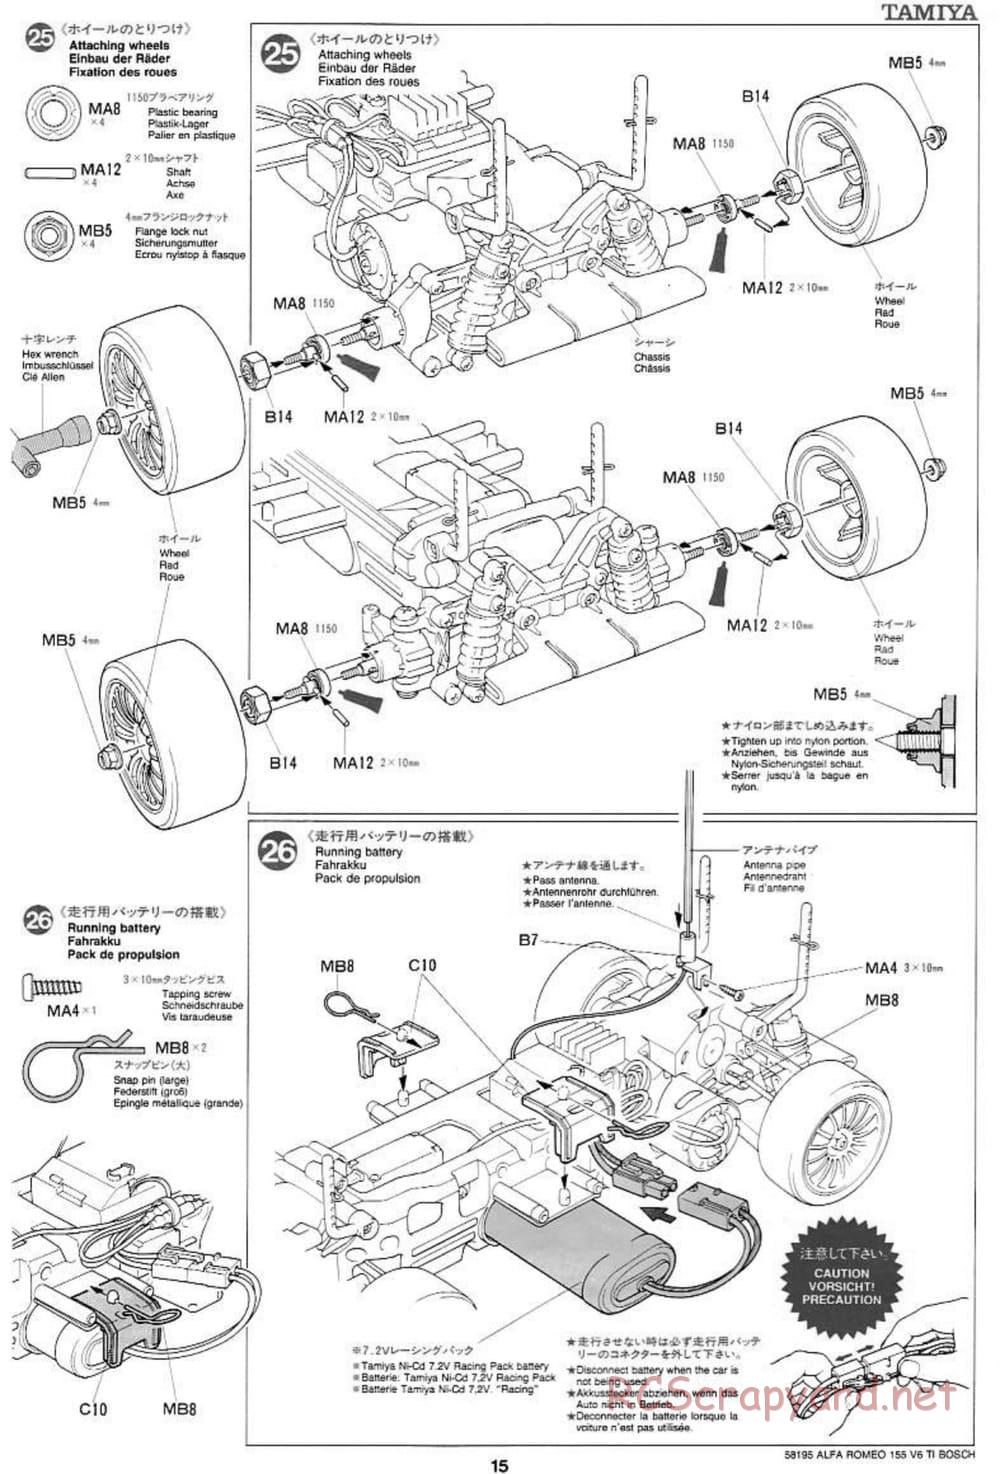 Tamiya - Alfa Romeo 155 V6 TI BOSCH - TL-01 Chassis - Manual - Page 15